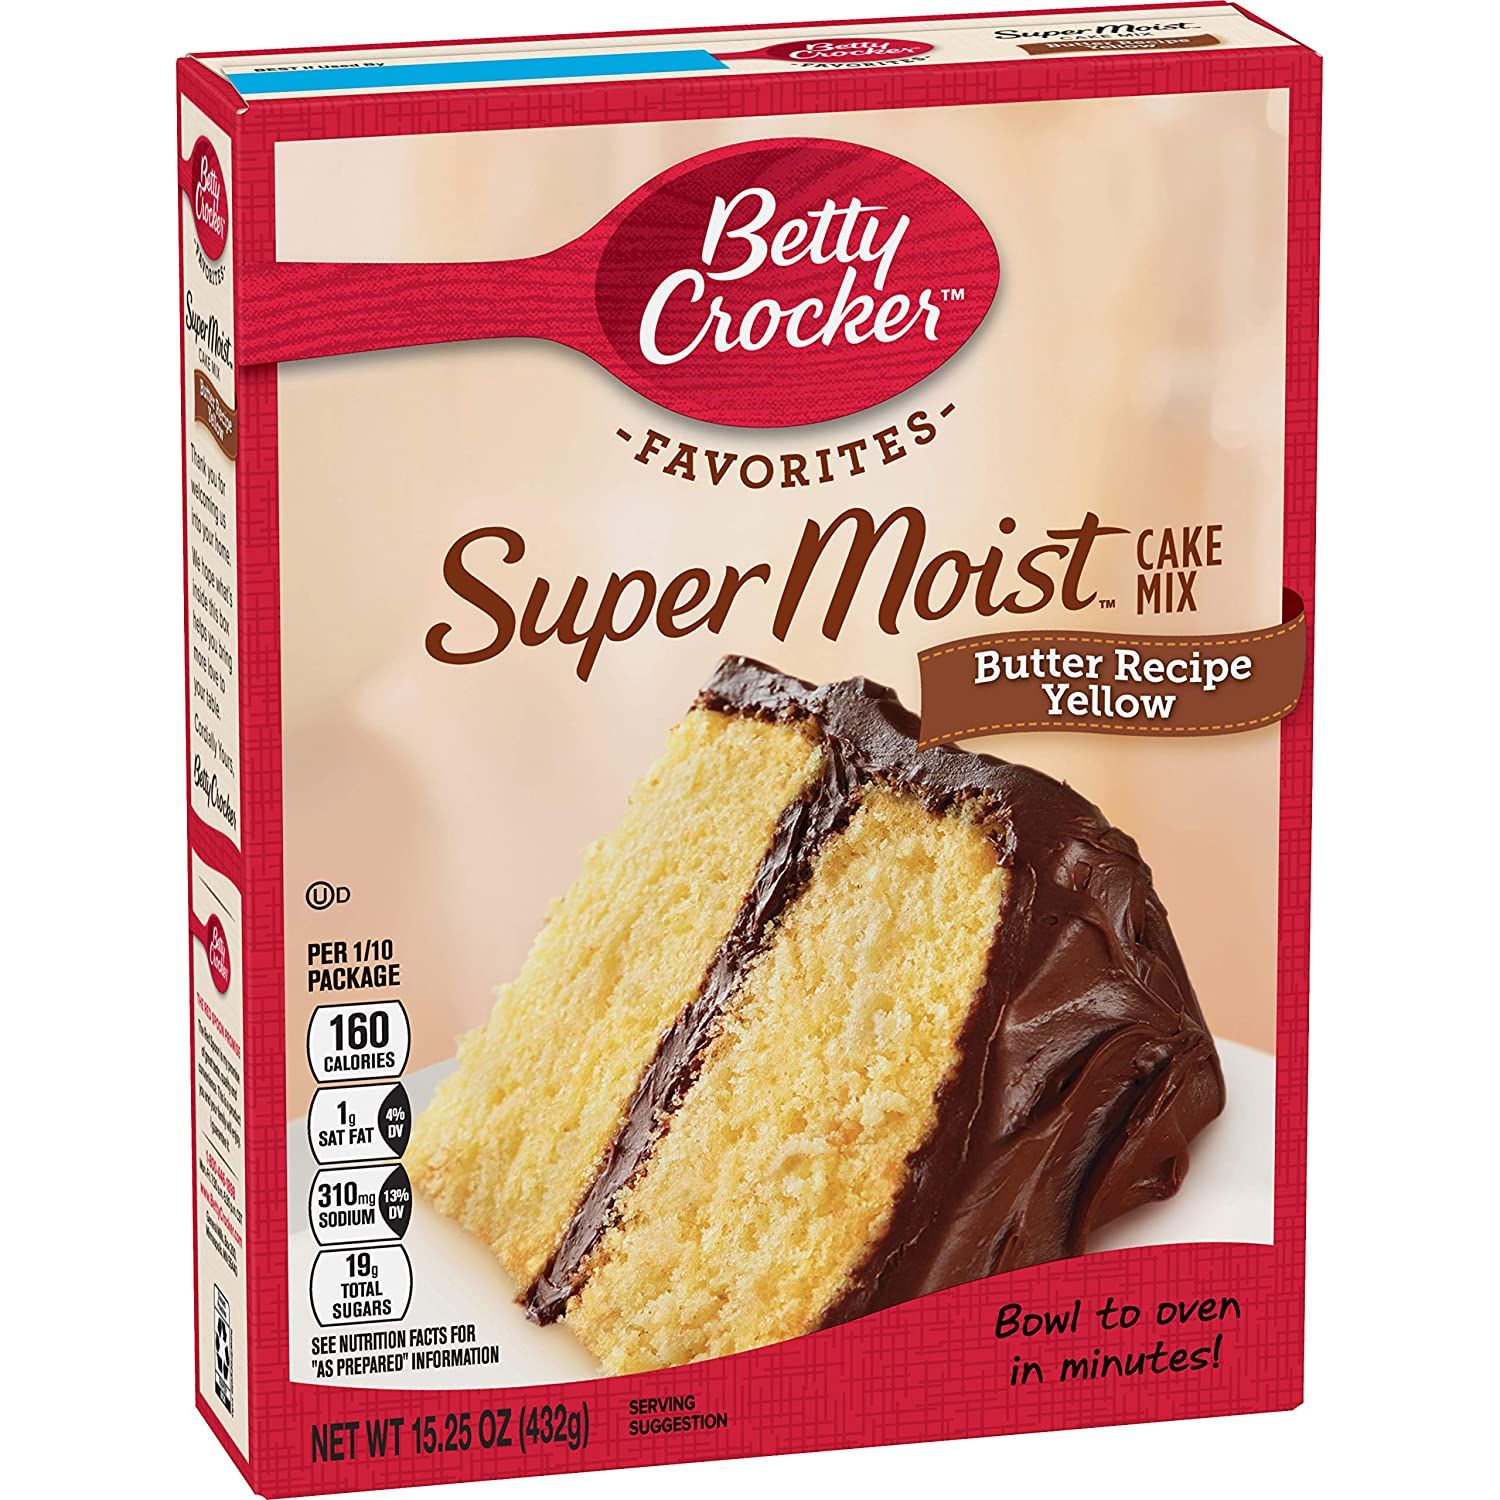 Betty Crocker Super Moist Cake Mix Butter Recipe Yellow Pouch Image